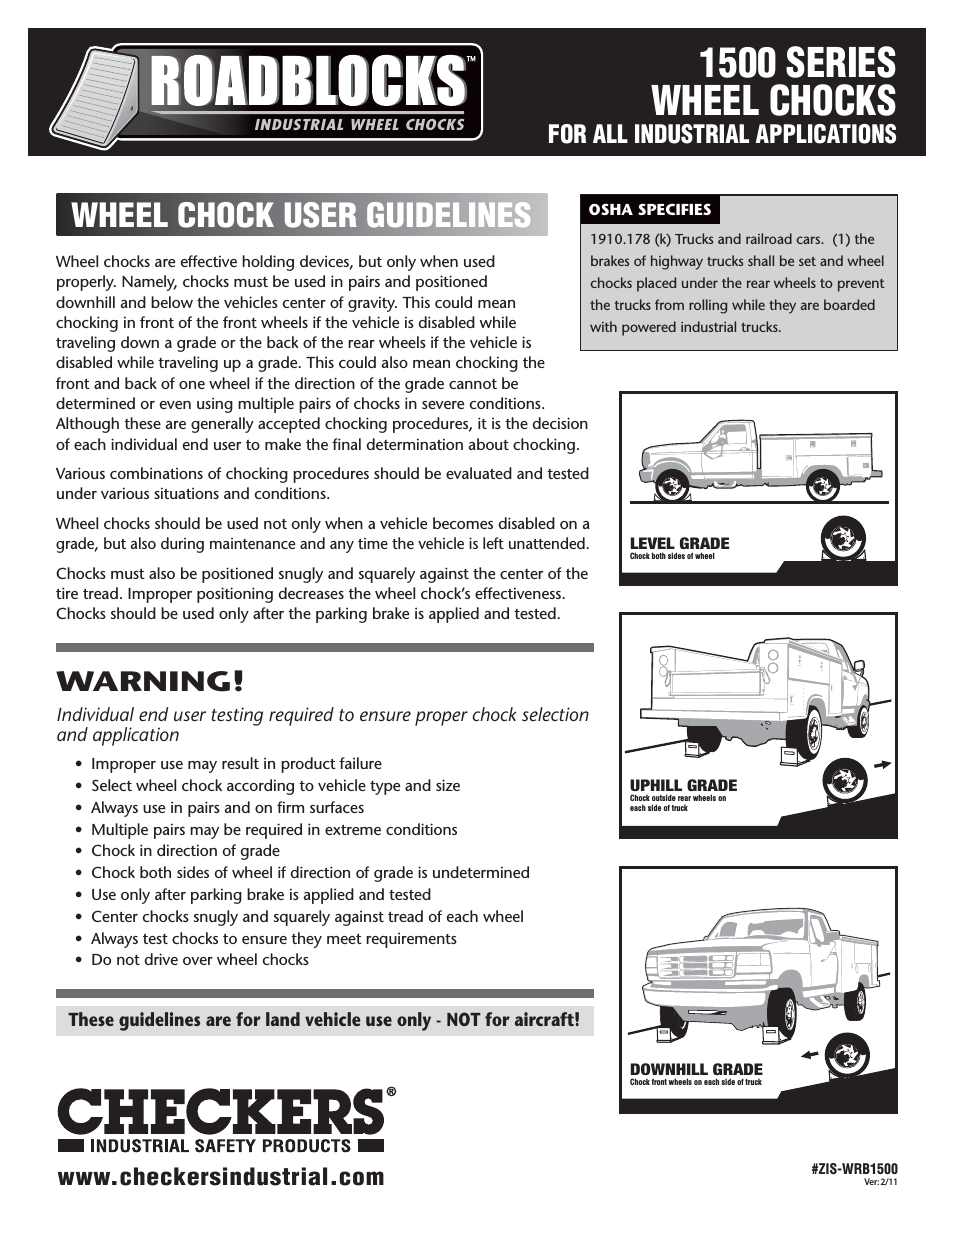 Roadblocks 1500 Wheel Chocks User Guidelines